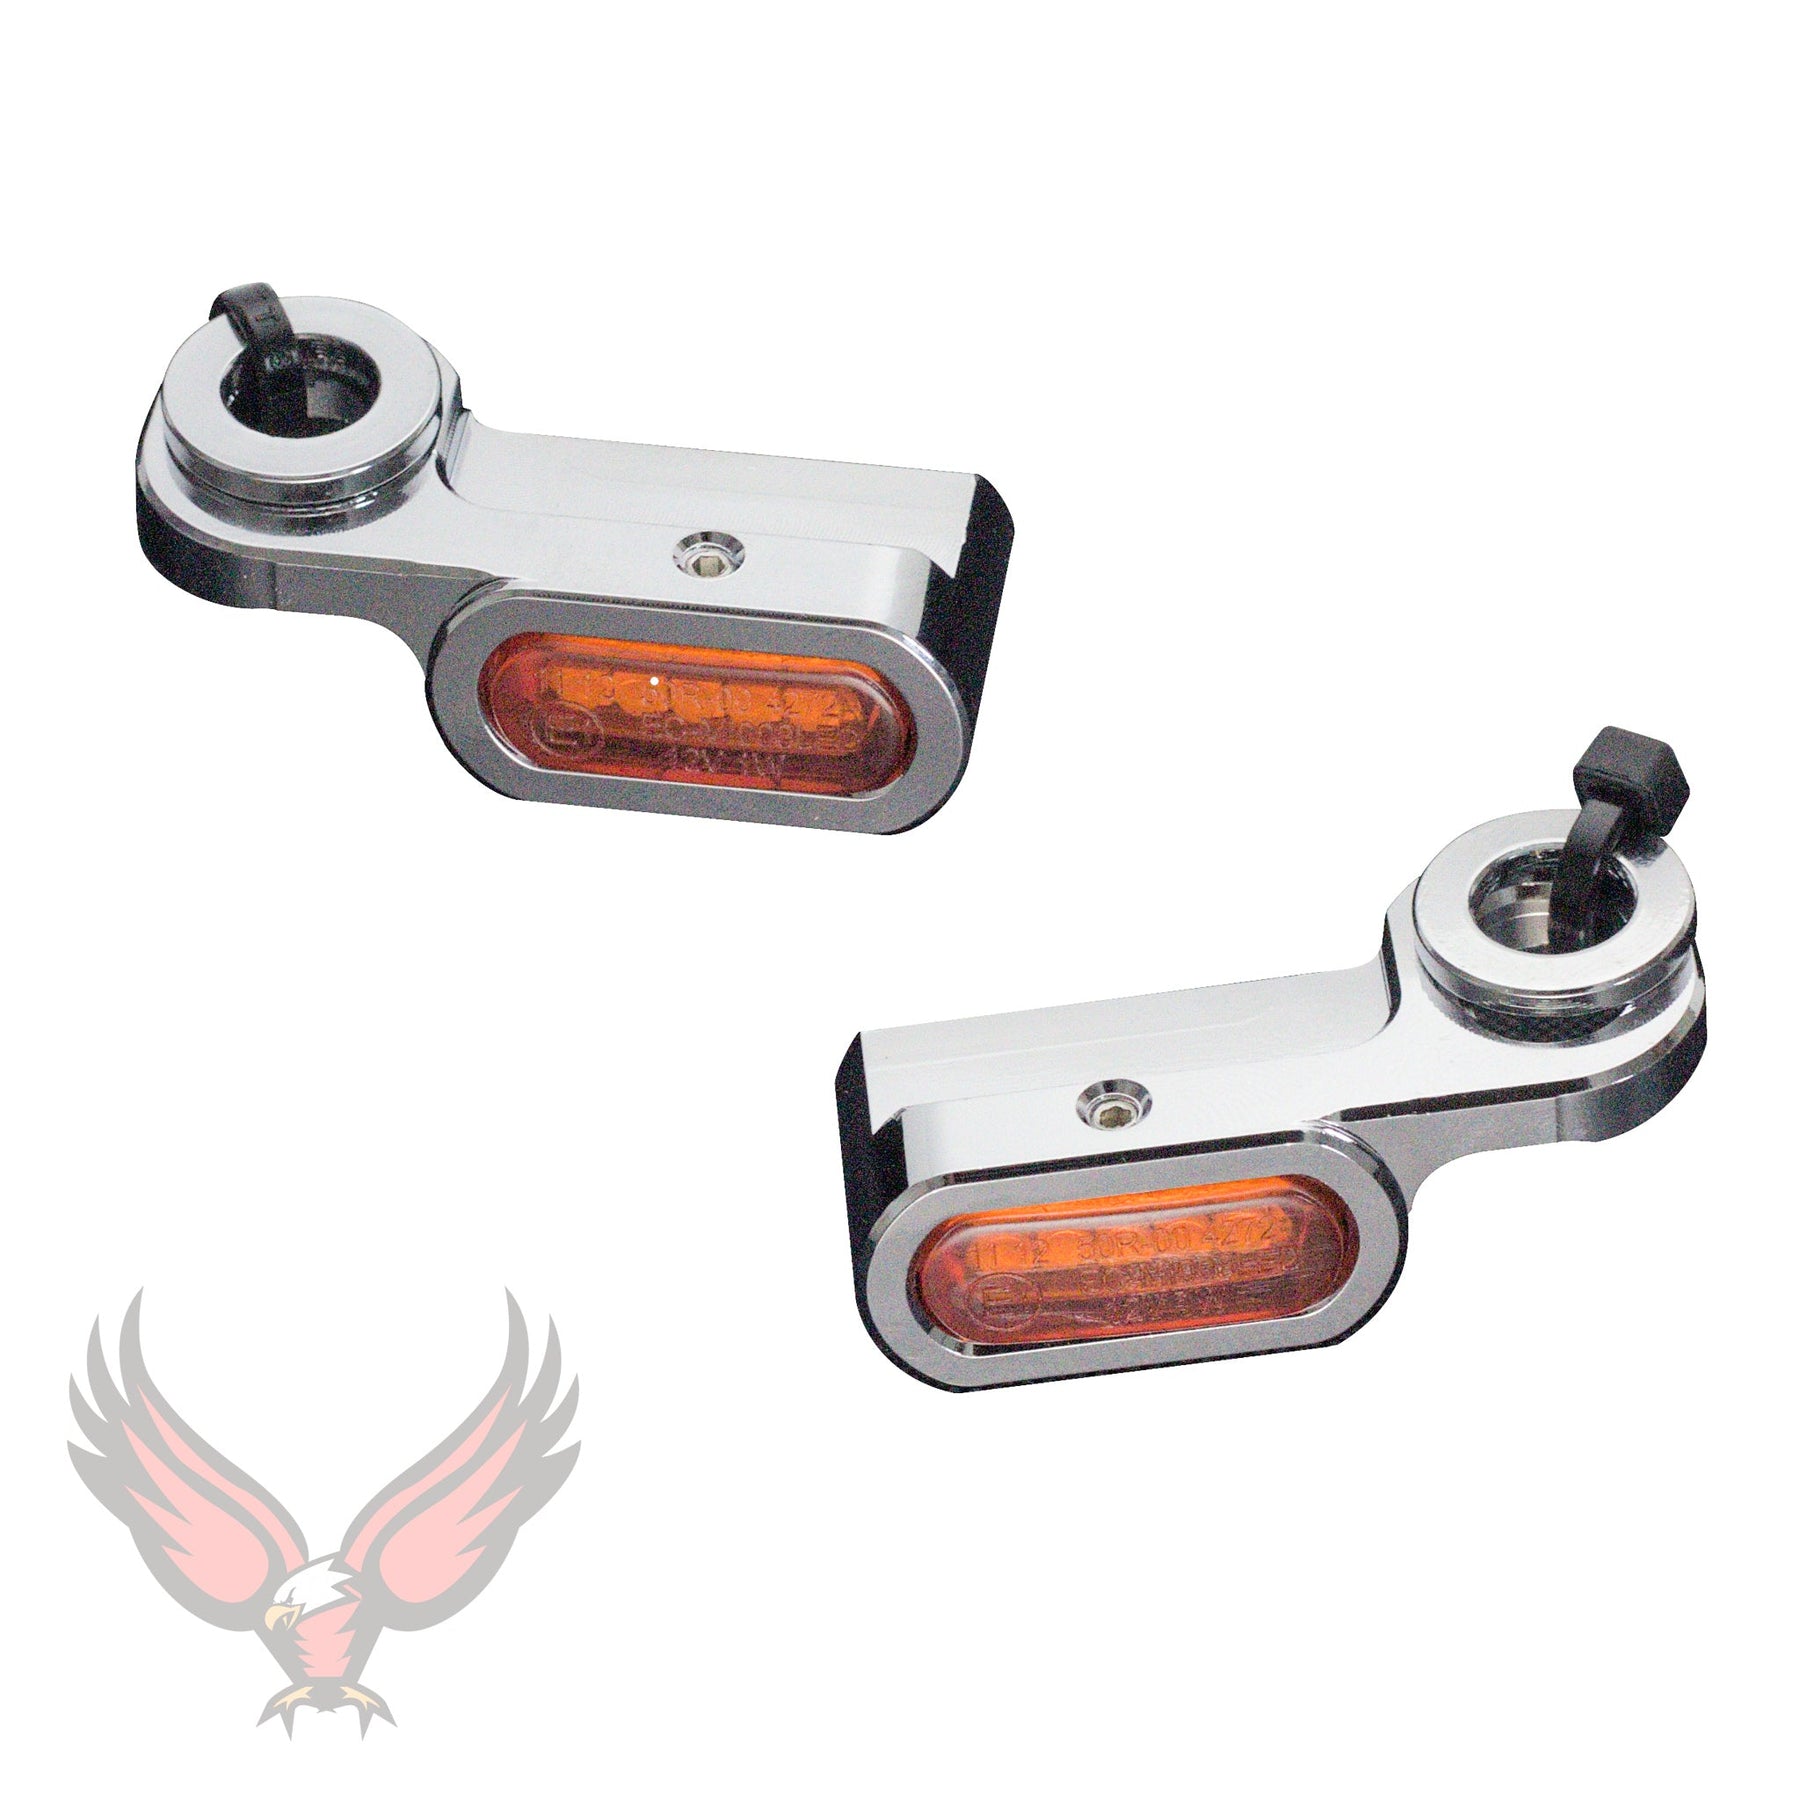 Eagle Lights SLIM LINE Front LED Turn Signals for Harley Davidson Touring Model Motorcycles